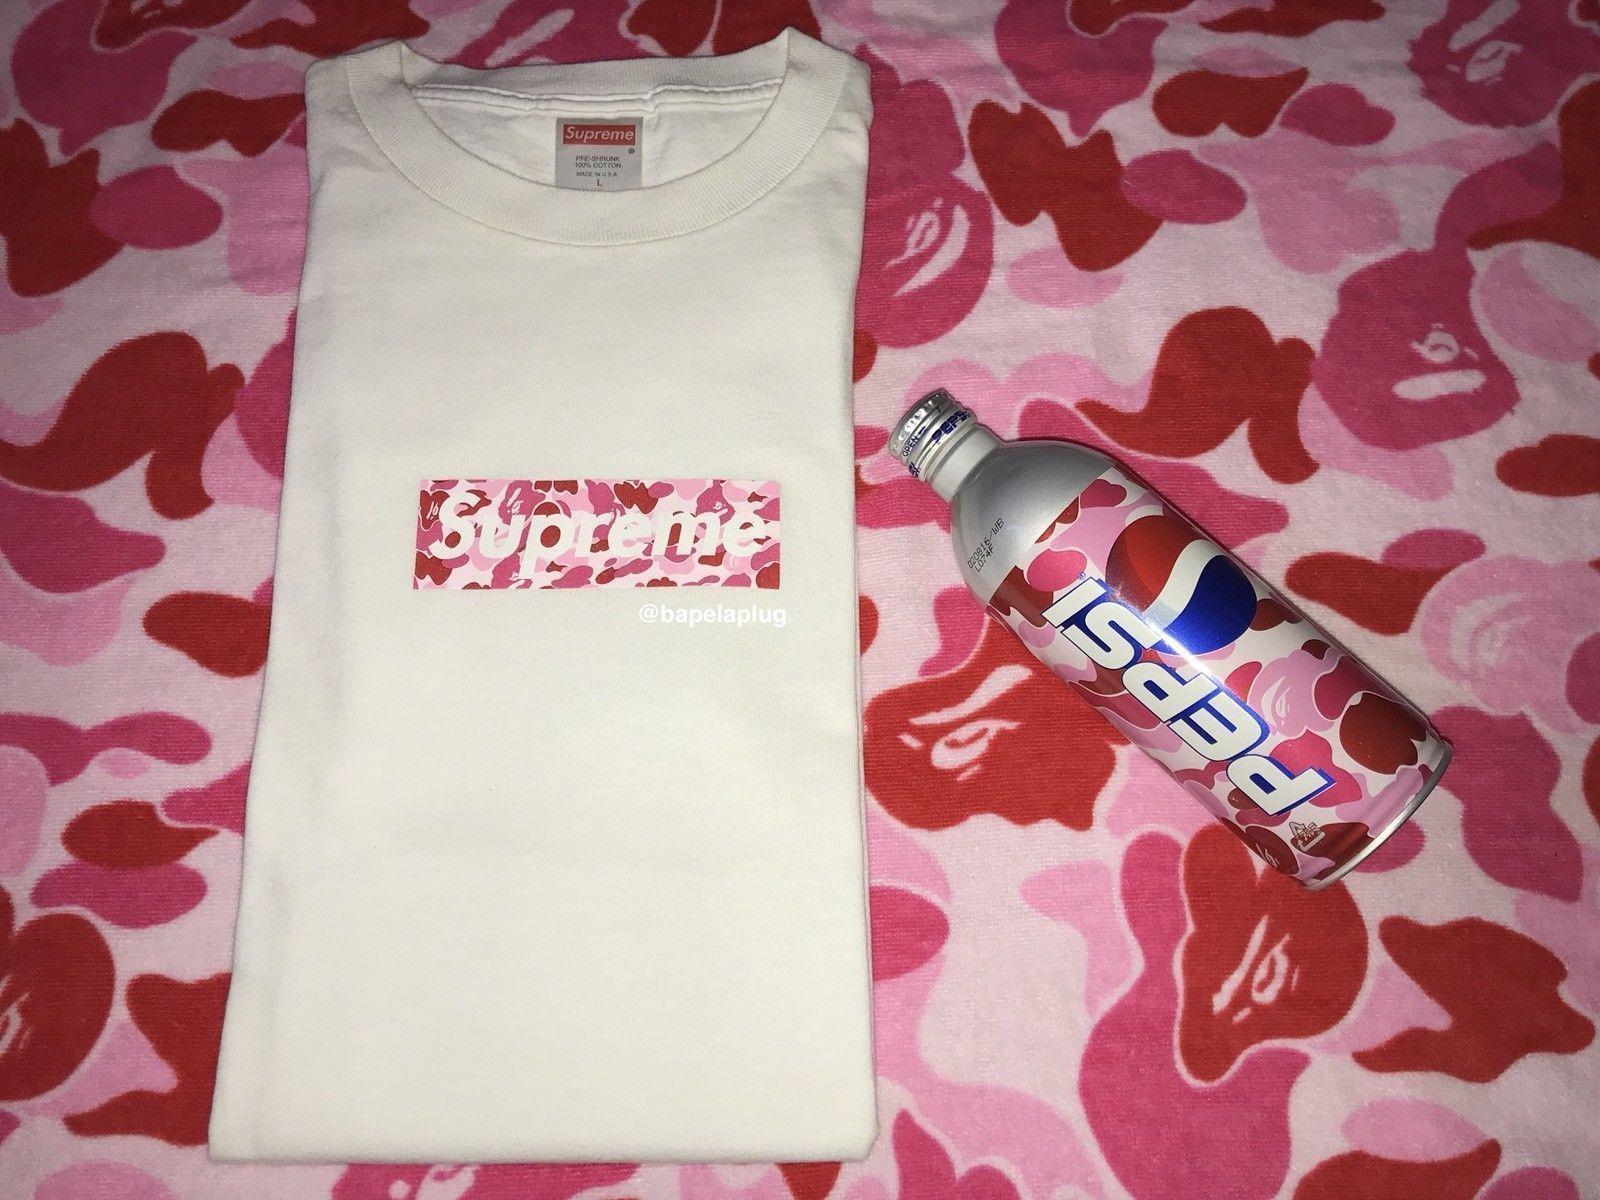 Supreme X BAPE Logo - Details about SUPREME x BAPE Pink ABC Camo Box Logo T-shirt WHITE L ...